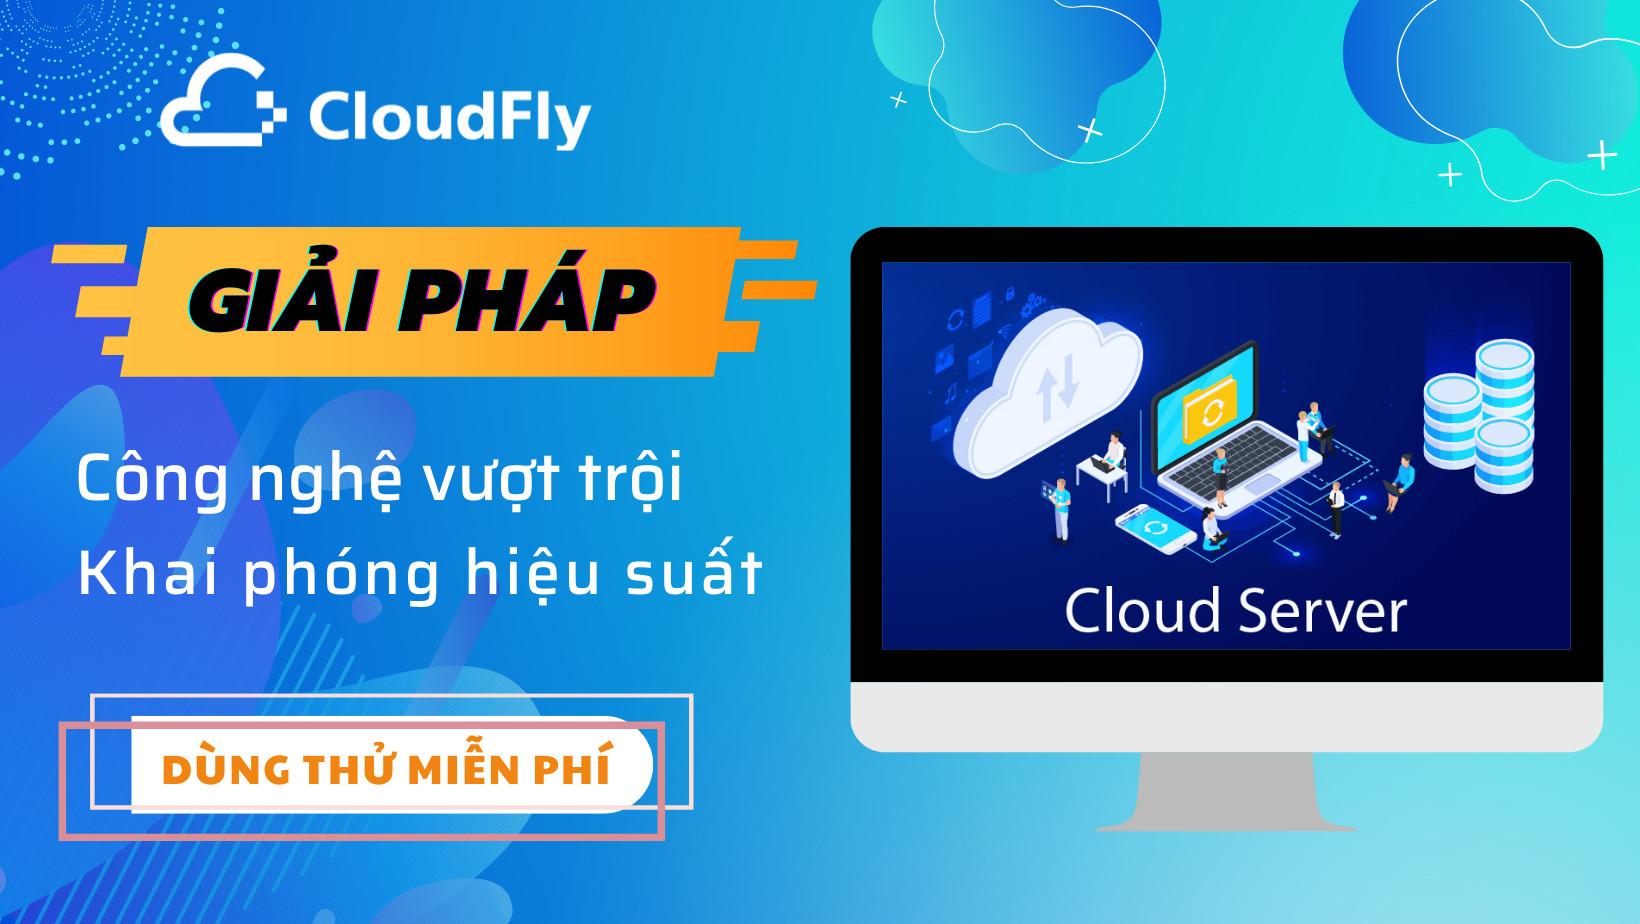 cloud server chất lượng giá rẻ tại cloudfly